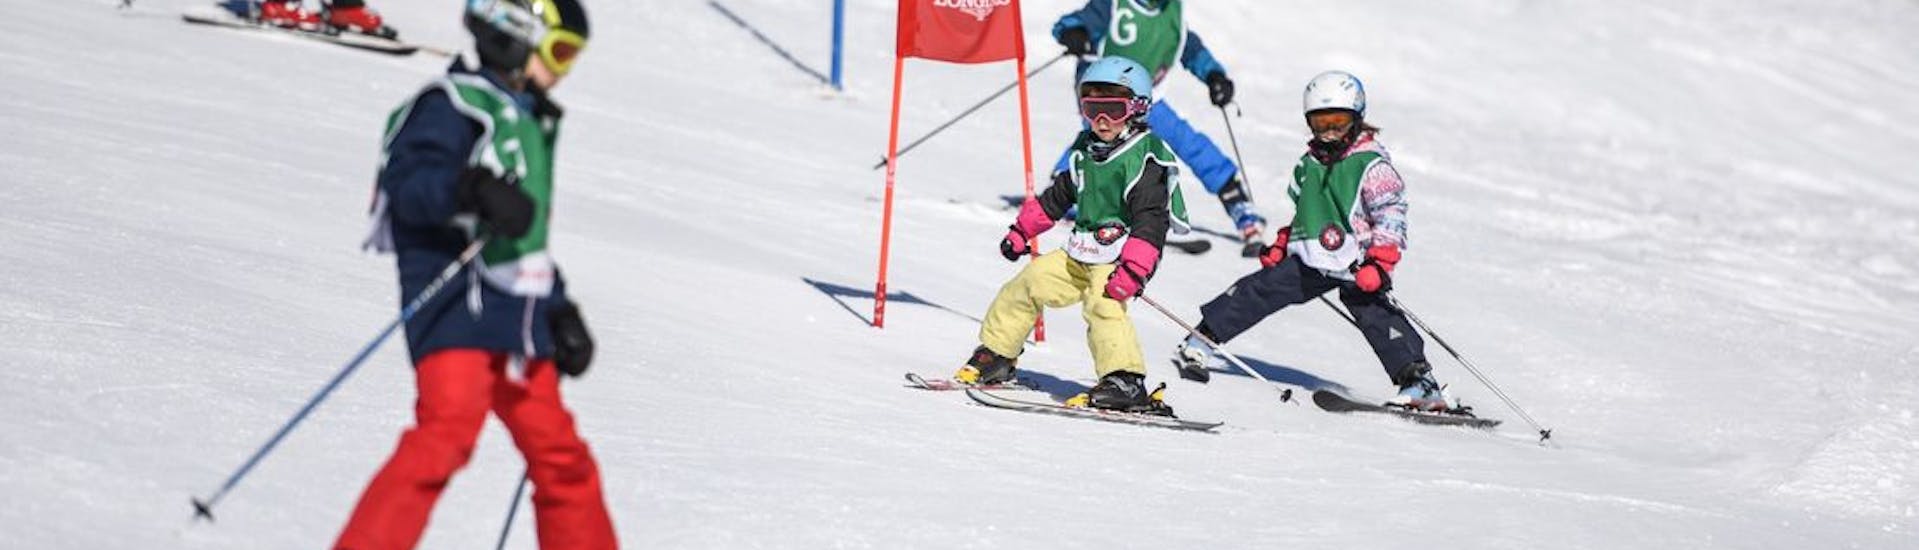 Lezioni di sci per bambini (5-15 anni) per tutti i livelli.